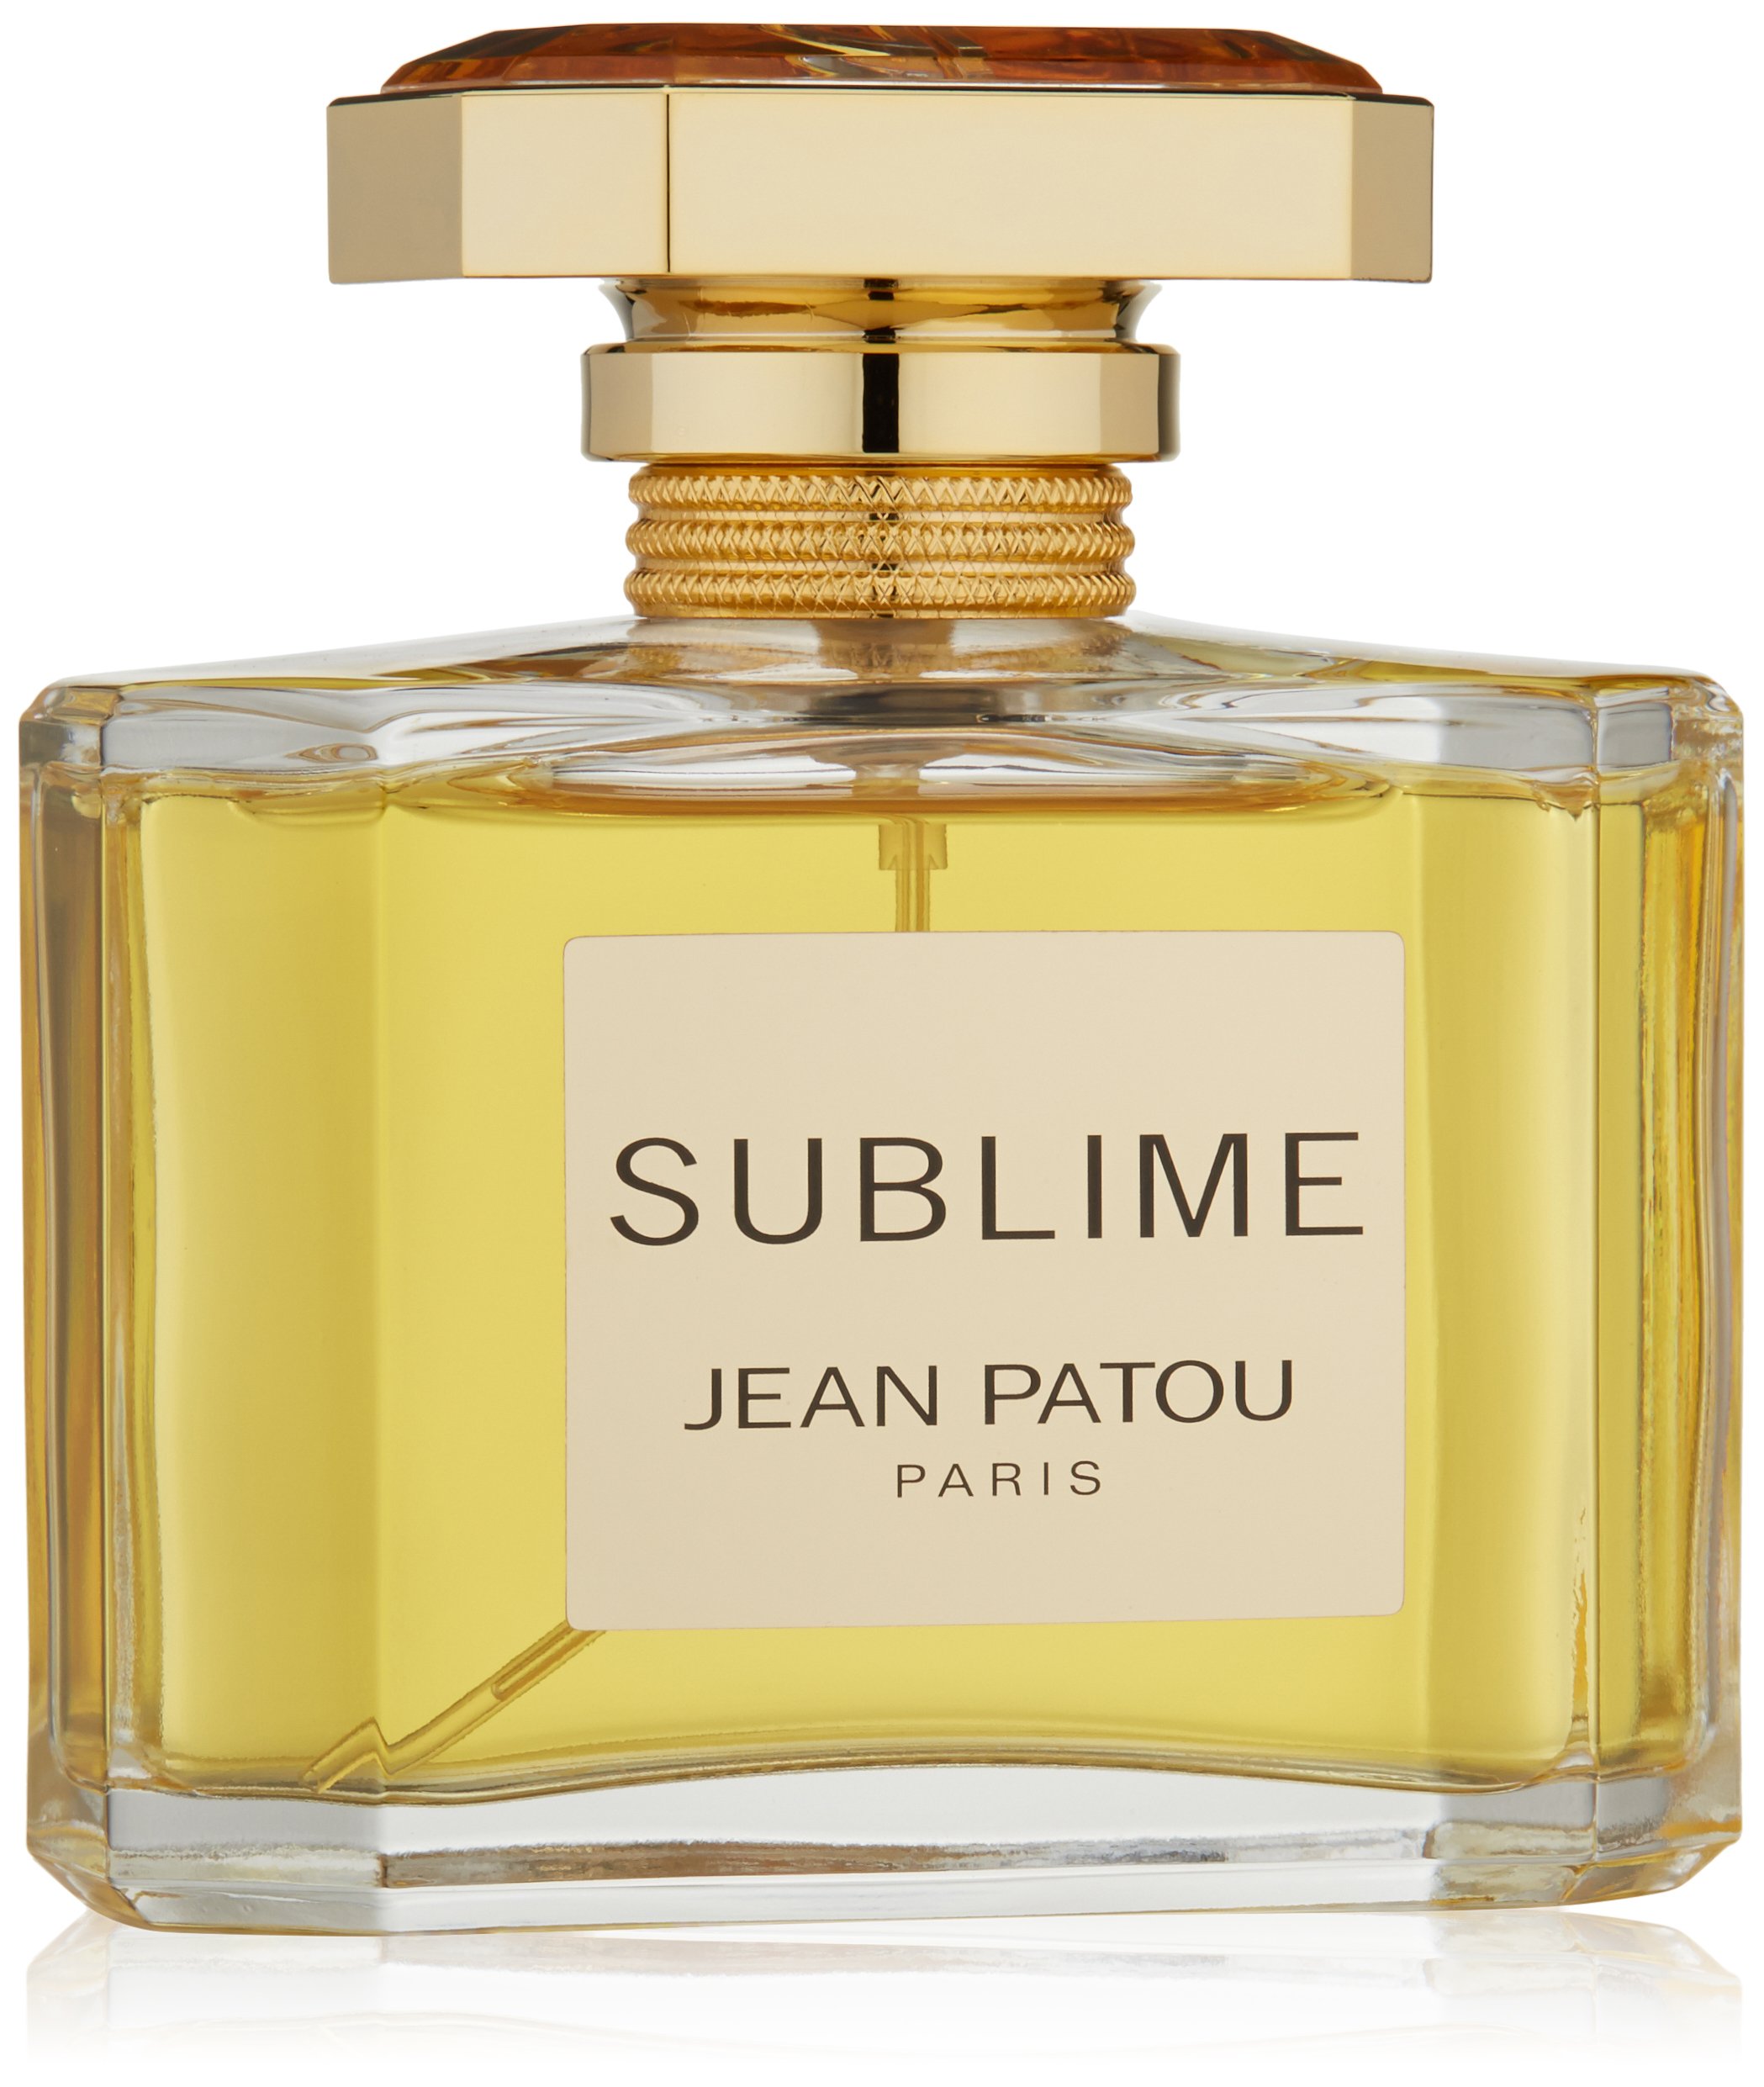 Jean Patou Sublime femme / women, Eau de Parfum, Vaporisateur / Spray 75 ml, 1er Pack